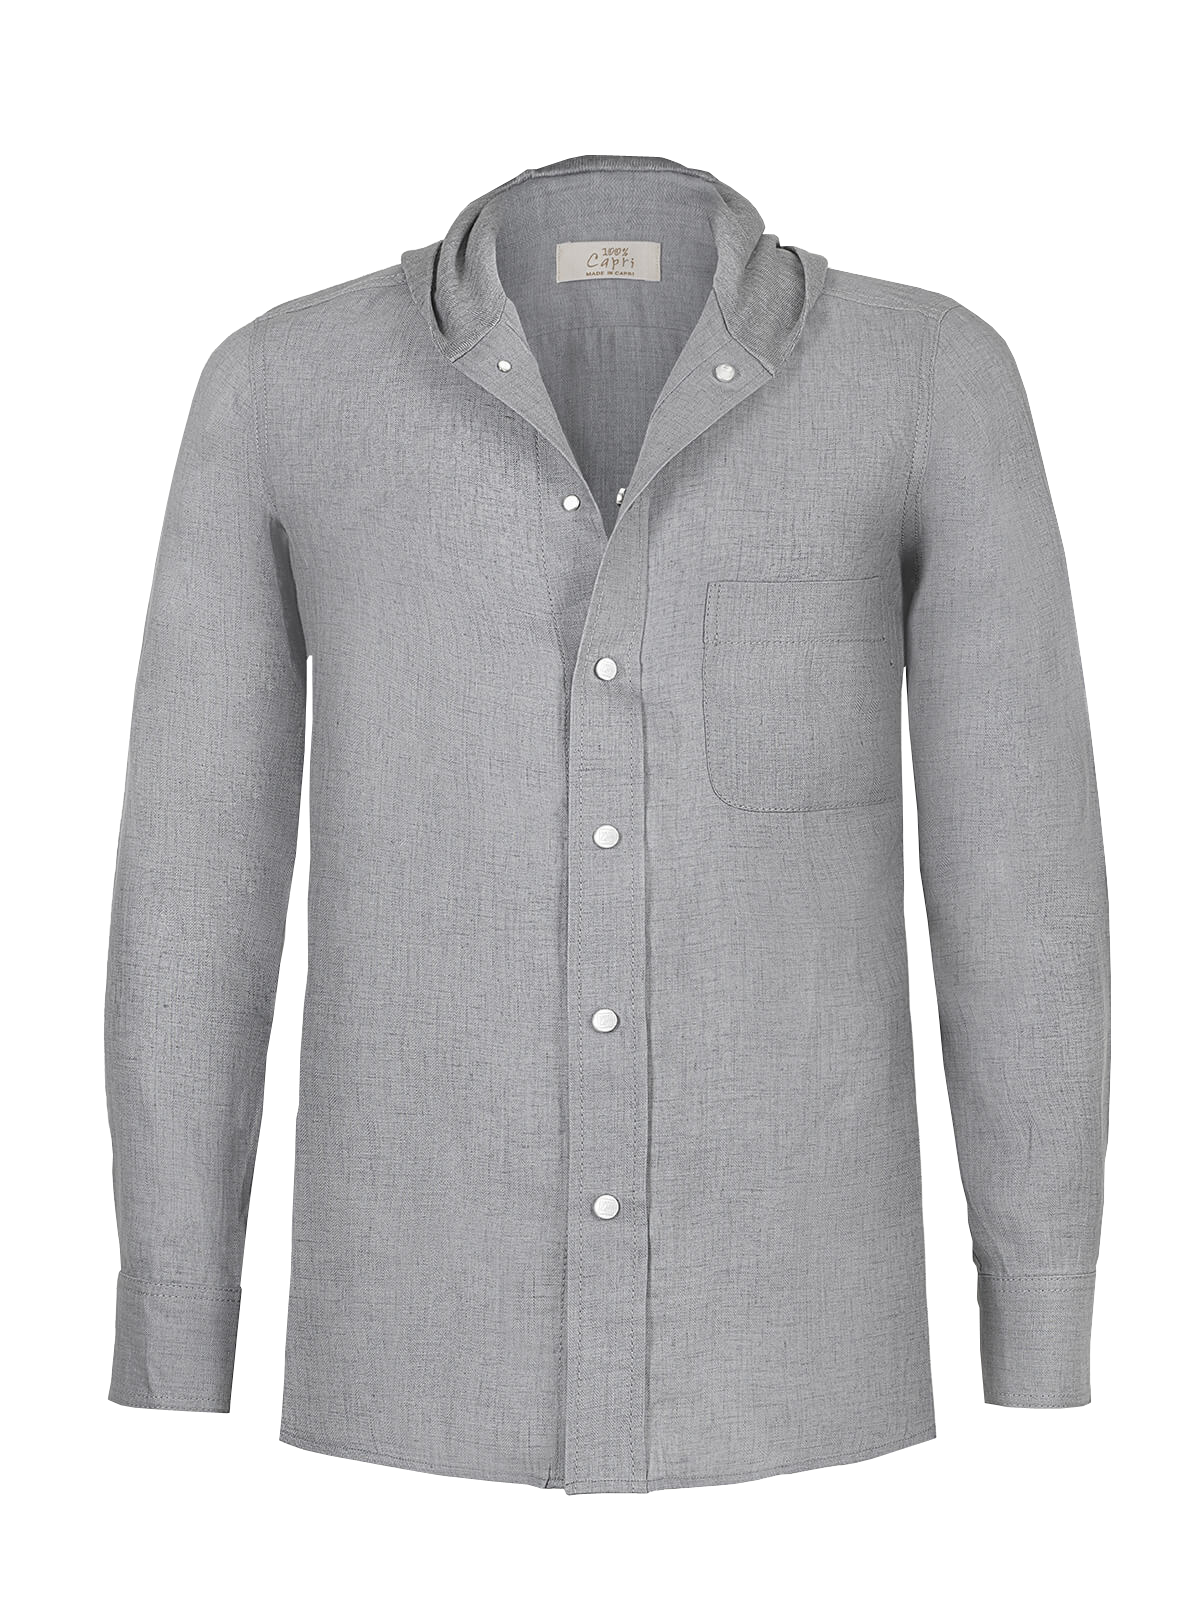 Camicia Cappuccio 100% Capri light grey linen t-shirt front